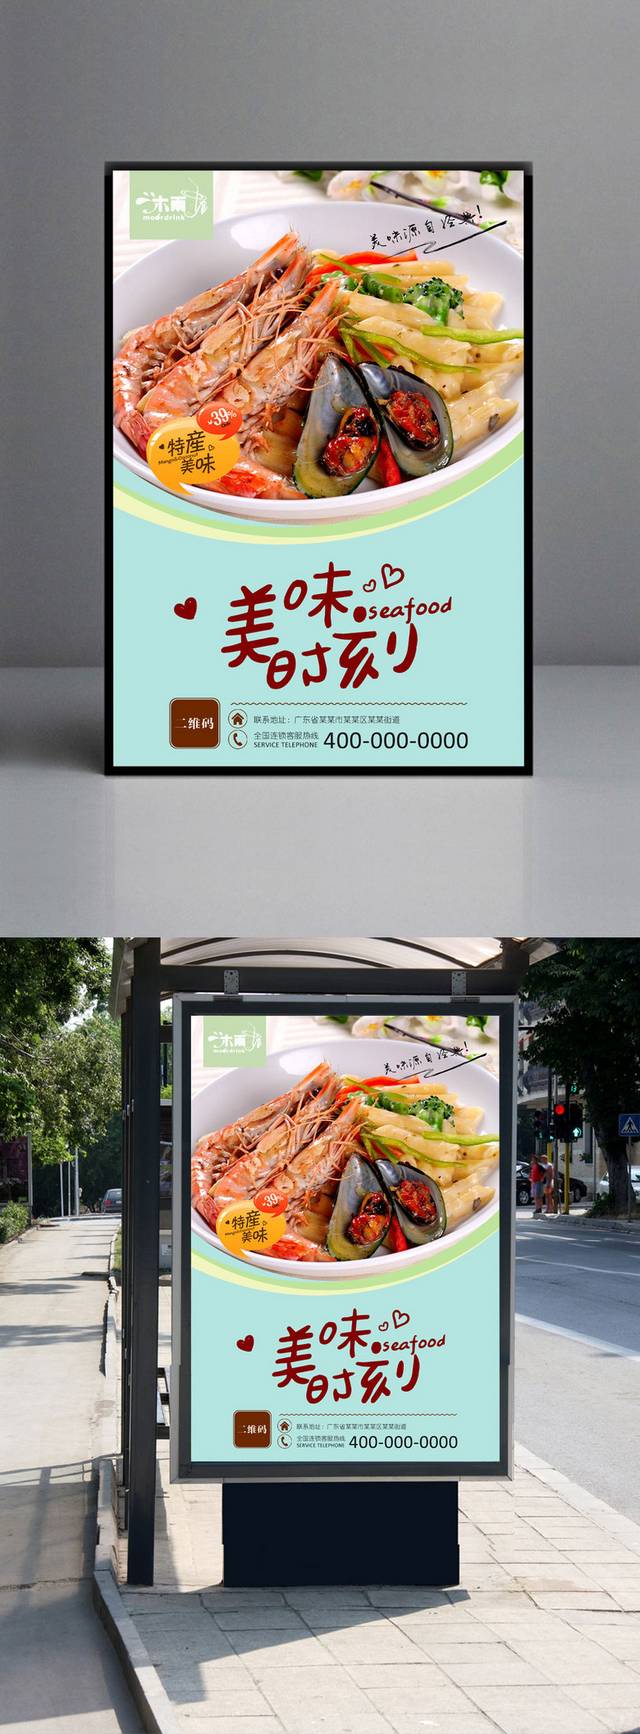 清新美味海鲜海报宣传设计